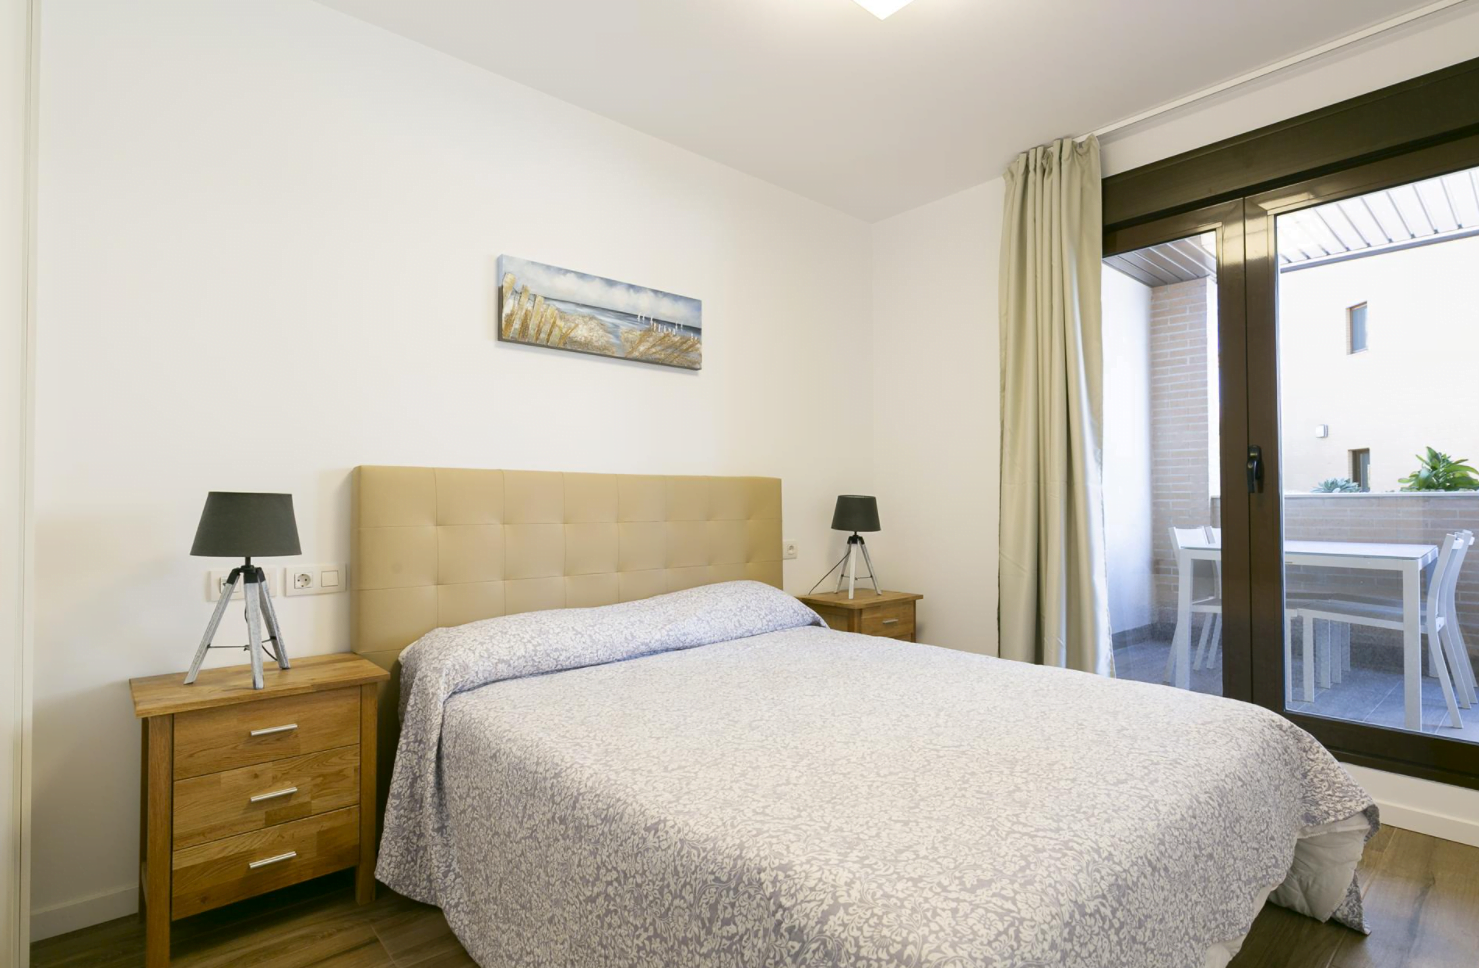 Dormitorio con cama de matrimonio del apartamento disponible con Quality Rent a Villa